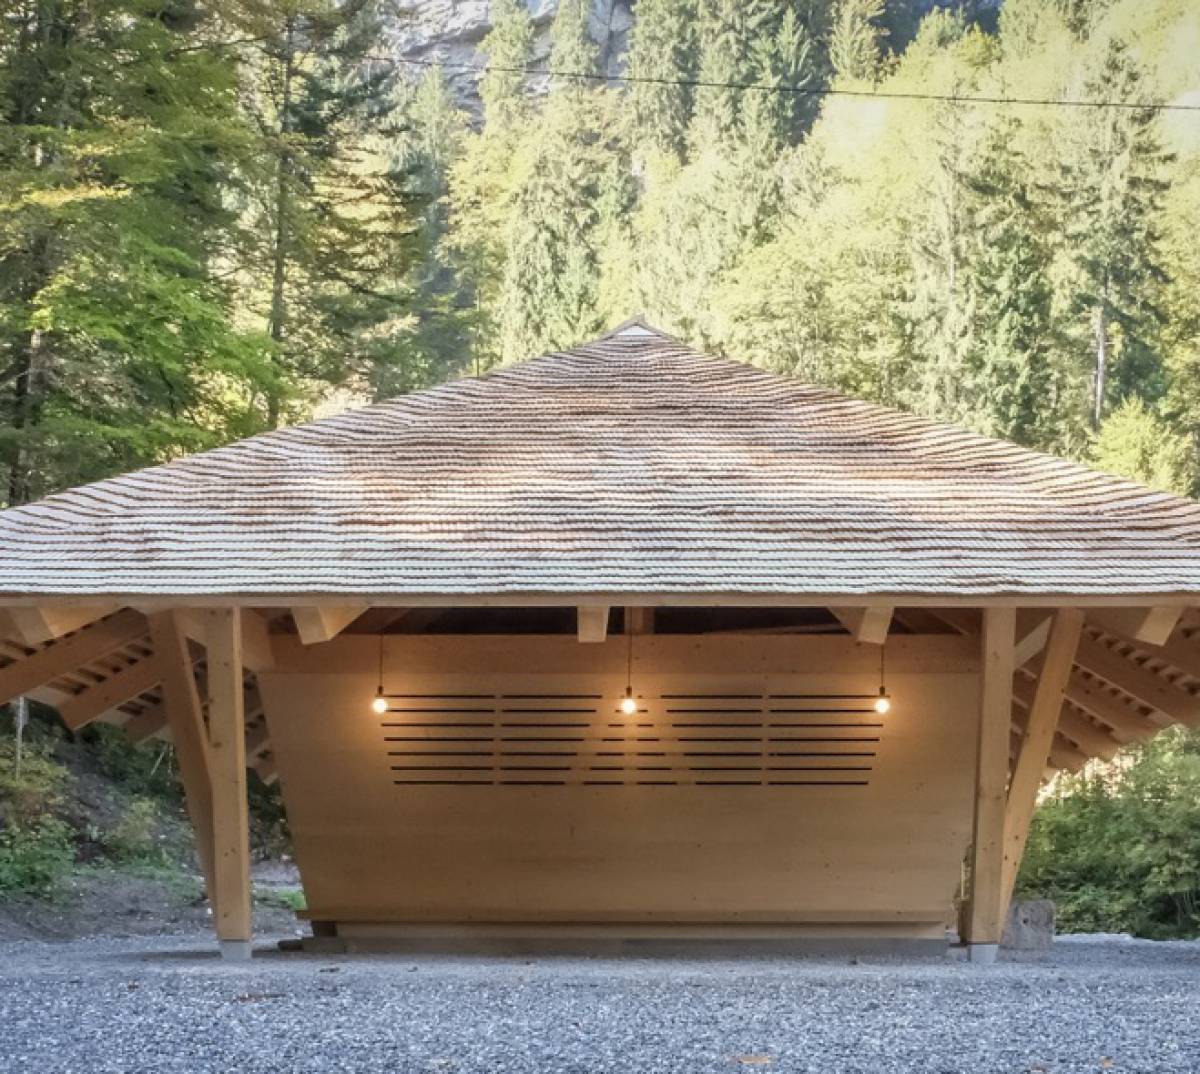  Blausee Wasserhaus in Switzerland